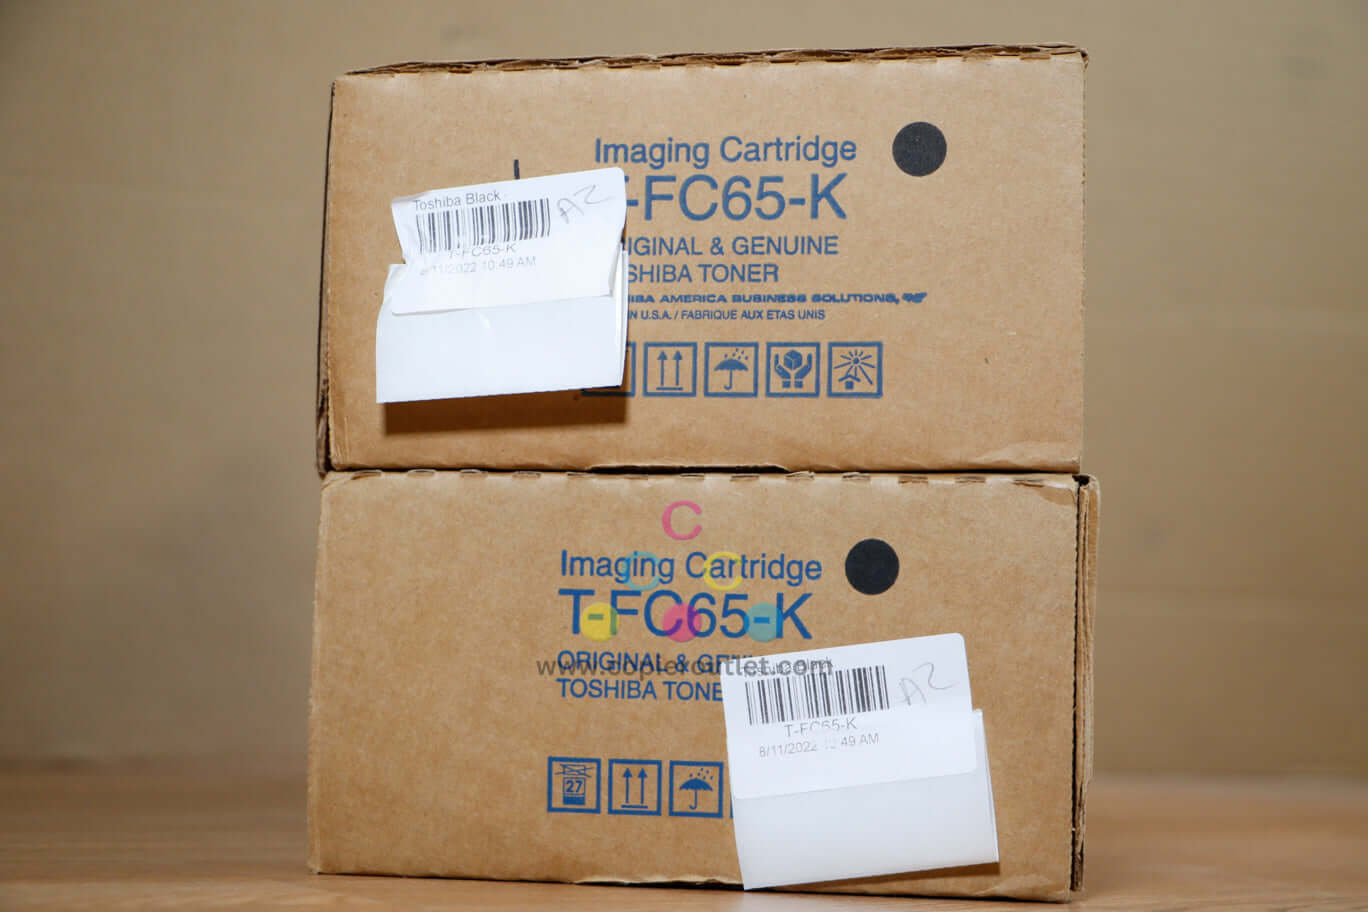 Lot Of 2 Toshiba T-FC65 K Toner Cartridge eSTUDIO 5540C/6550CT Same Day Shipping